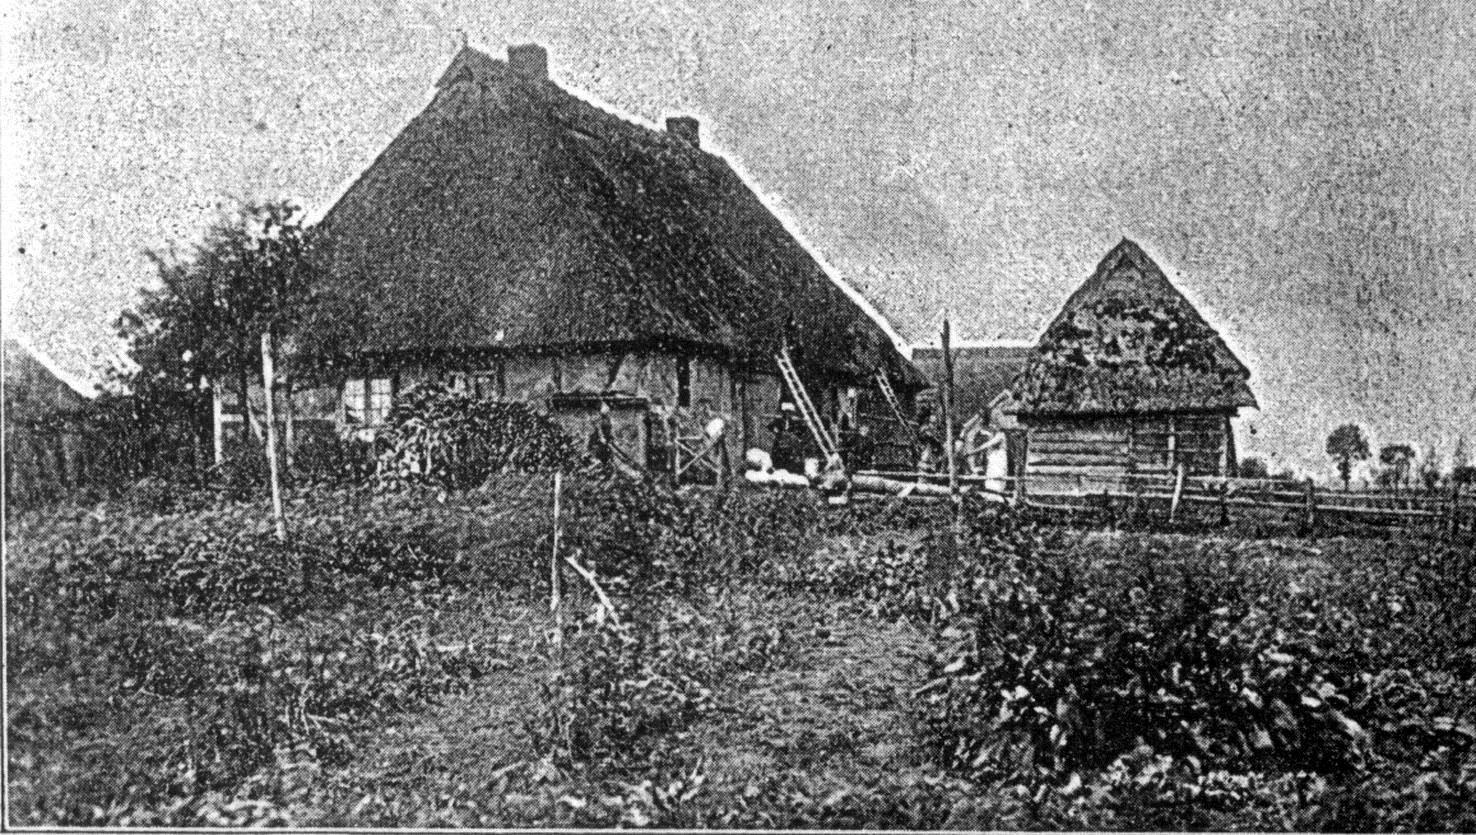 Ehemaliger Hirtenkaten 1903 (Quelle: von Oeynhausen, 1903)